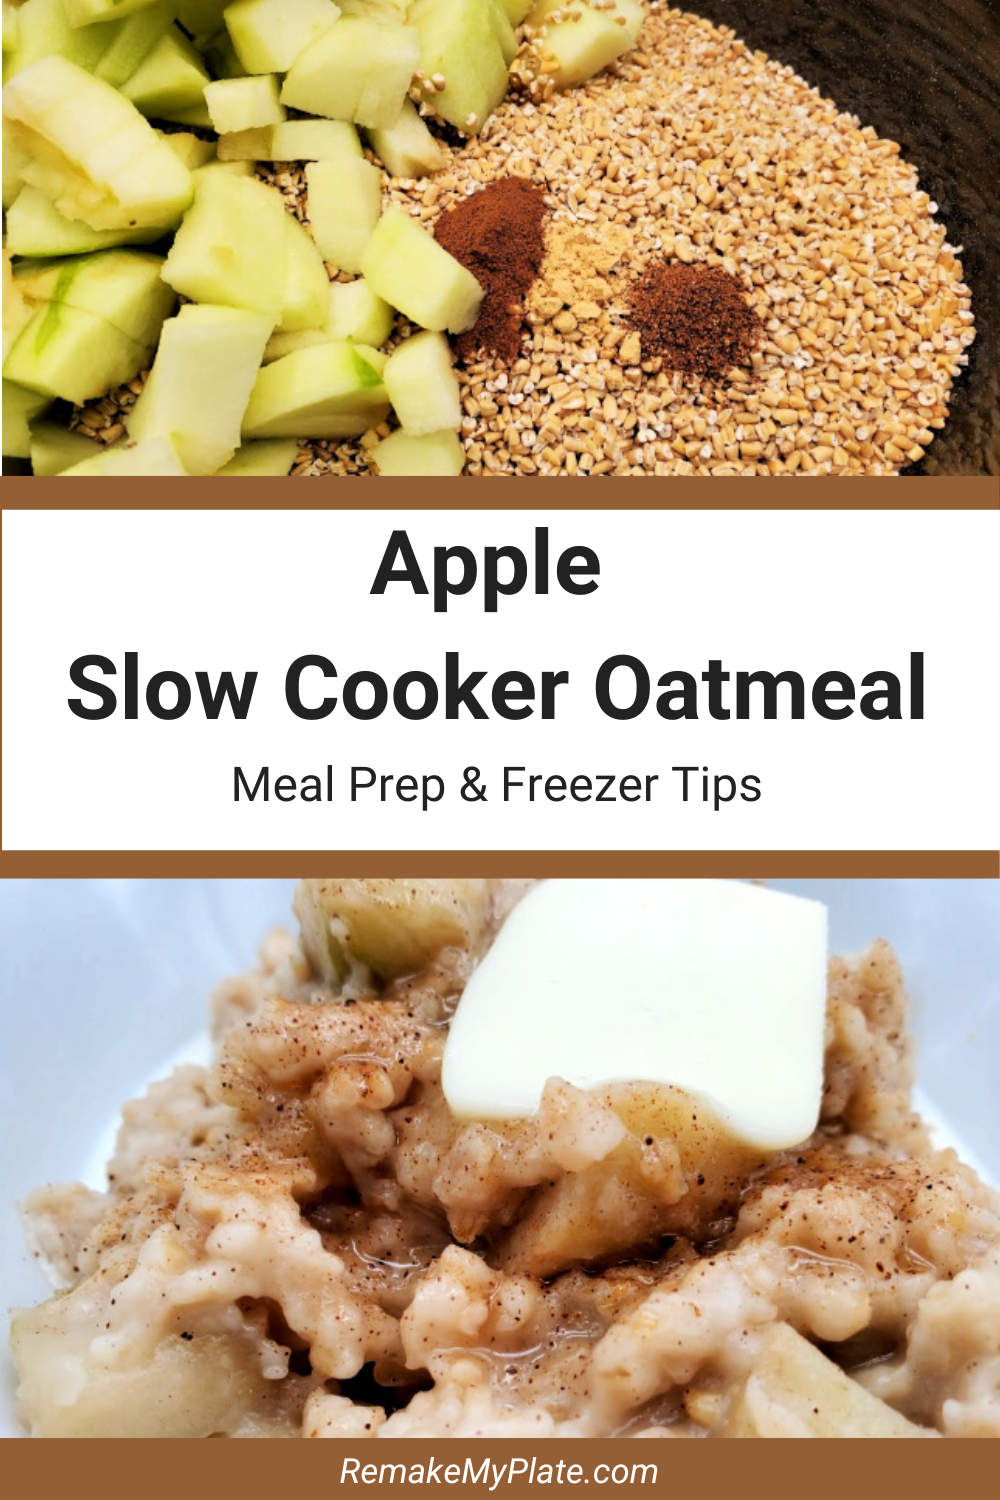 Apple Slow Cooker Oatmeal